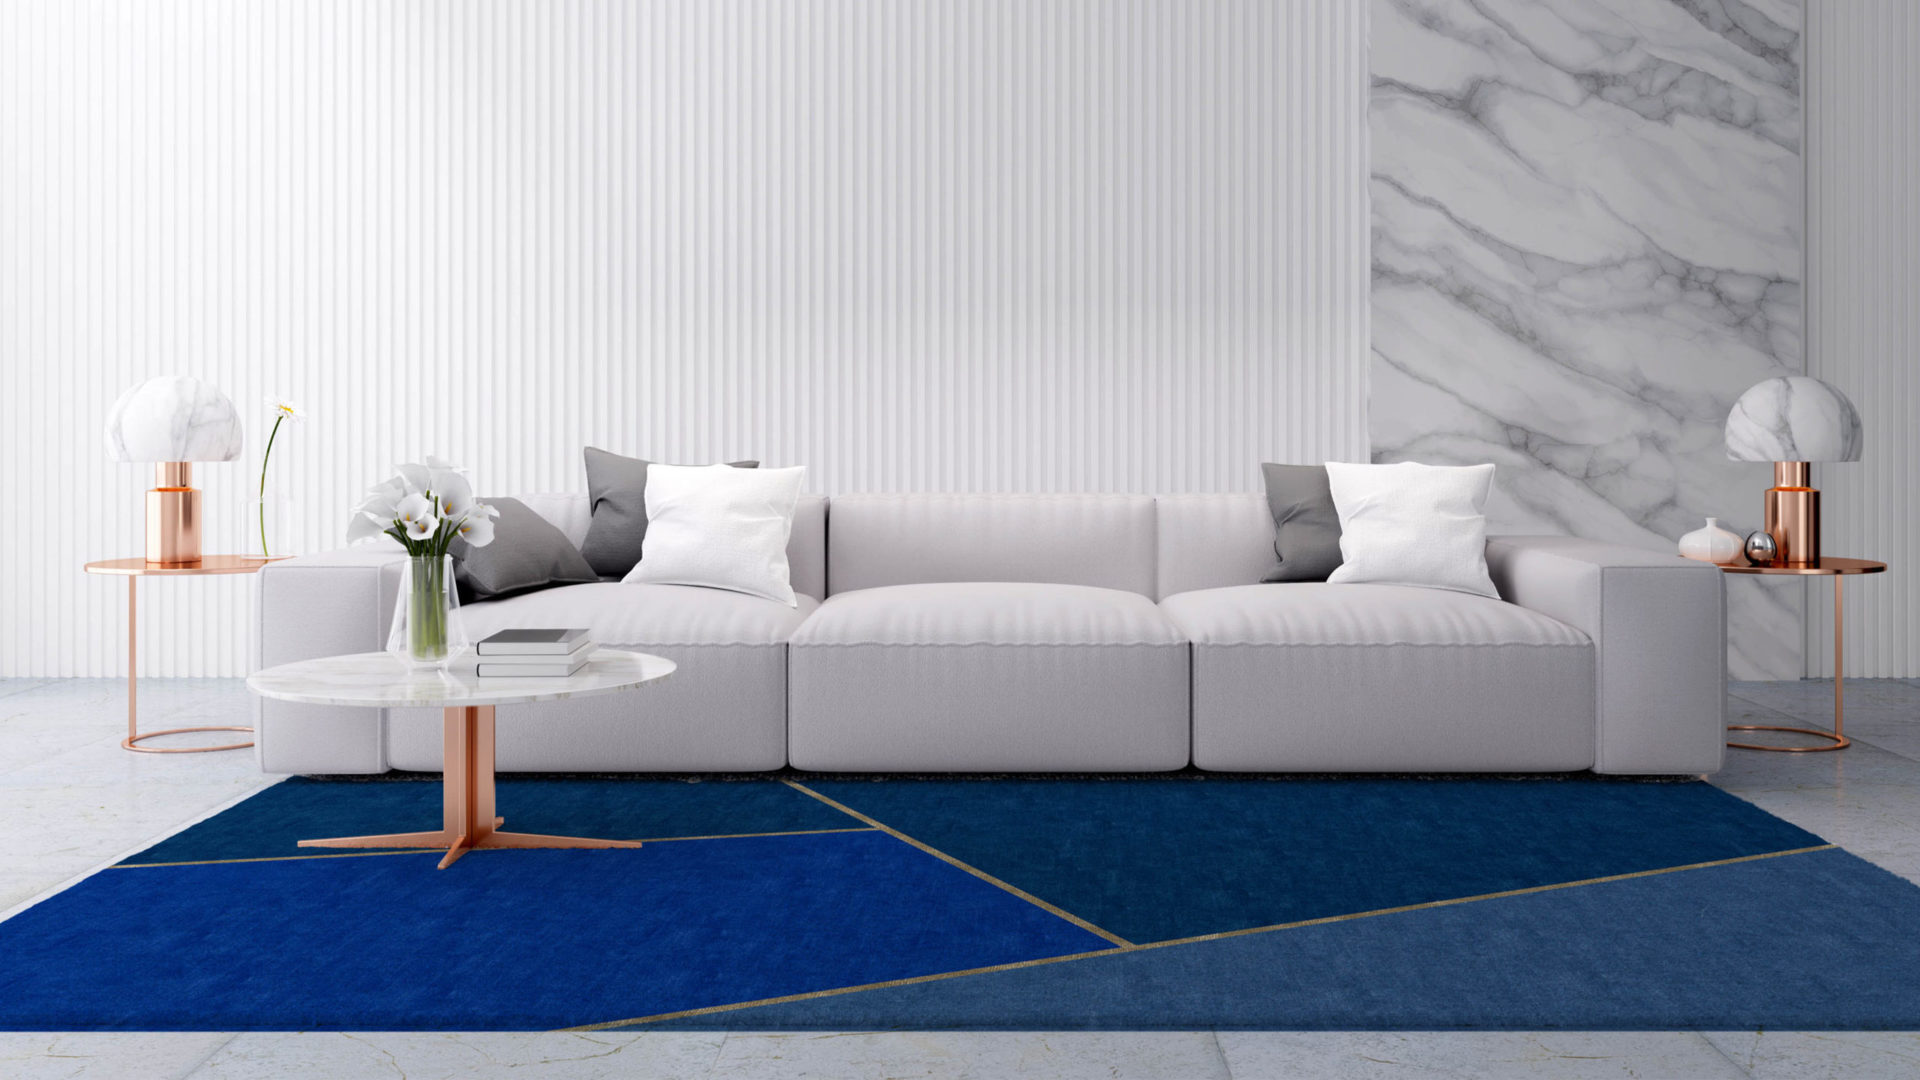 bic carpets teppich in blau gold im minimalismus wohnzimmer mit marmor